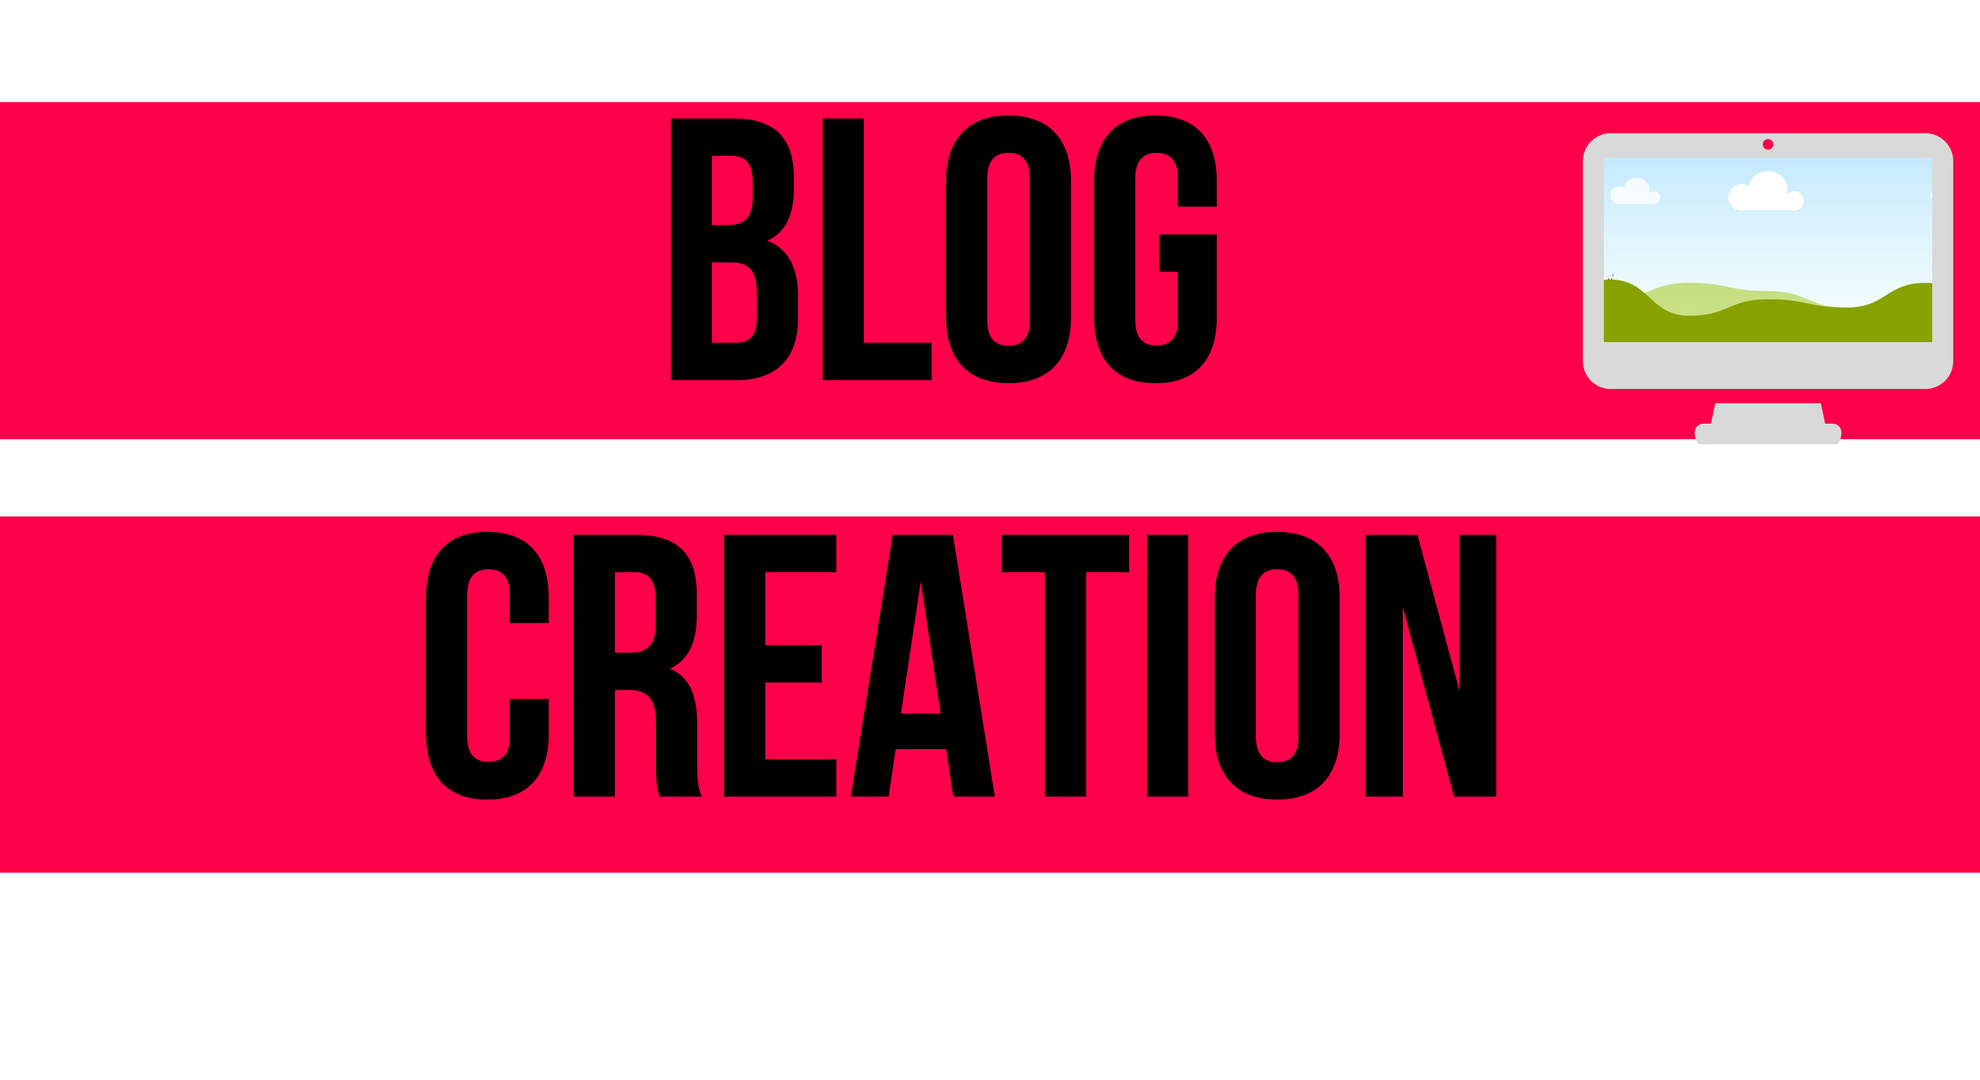 blog creation advice